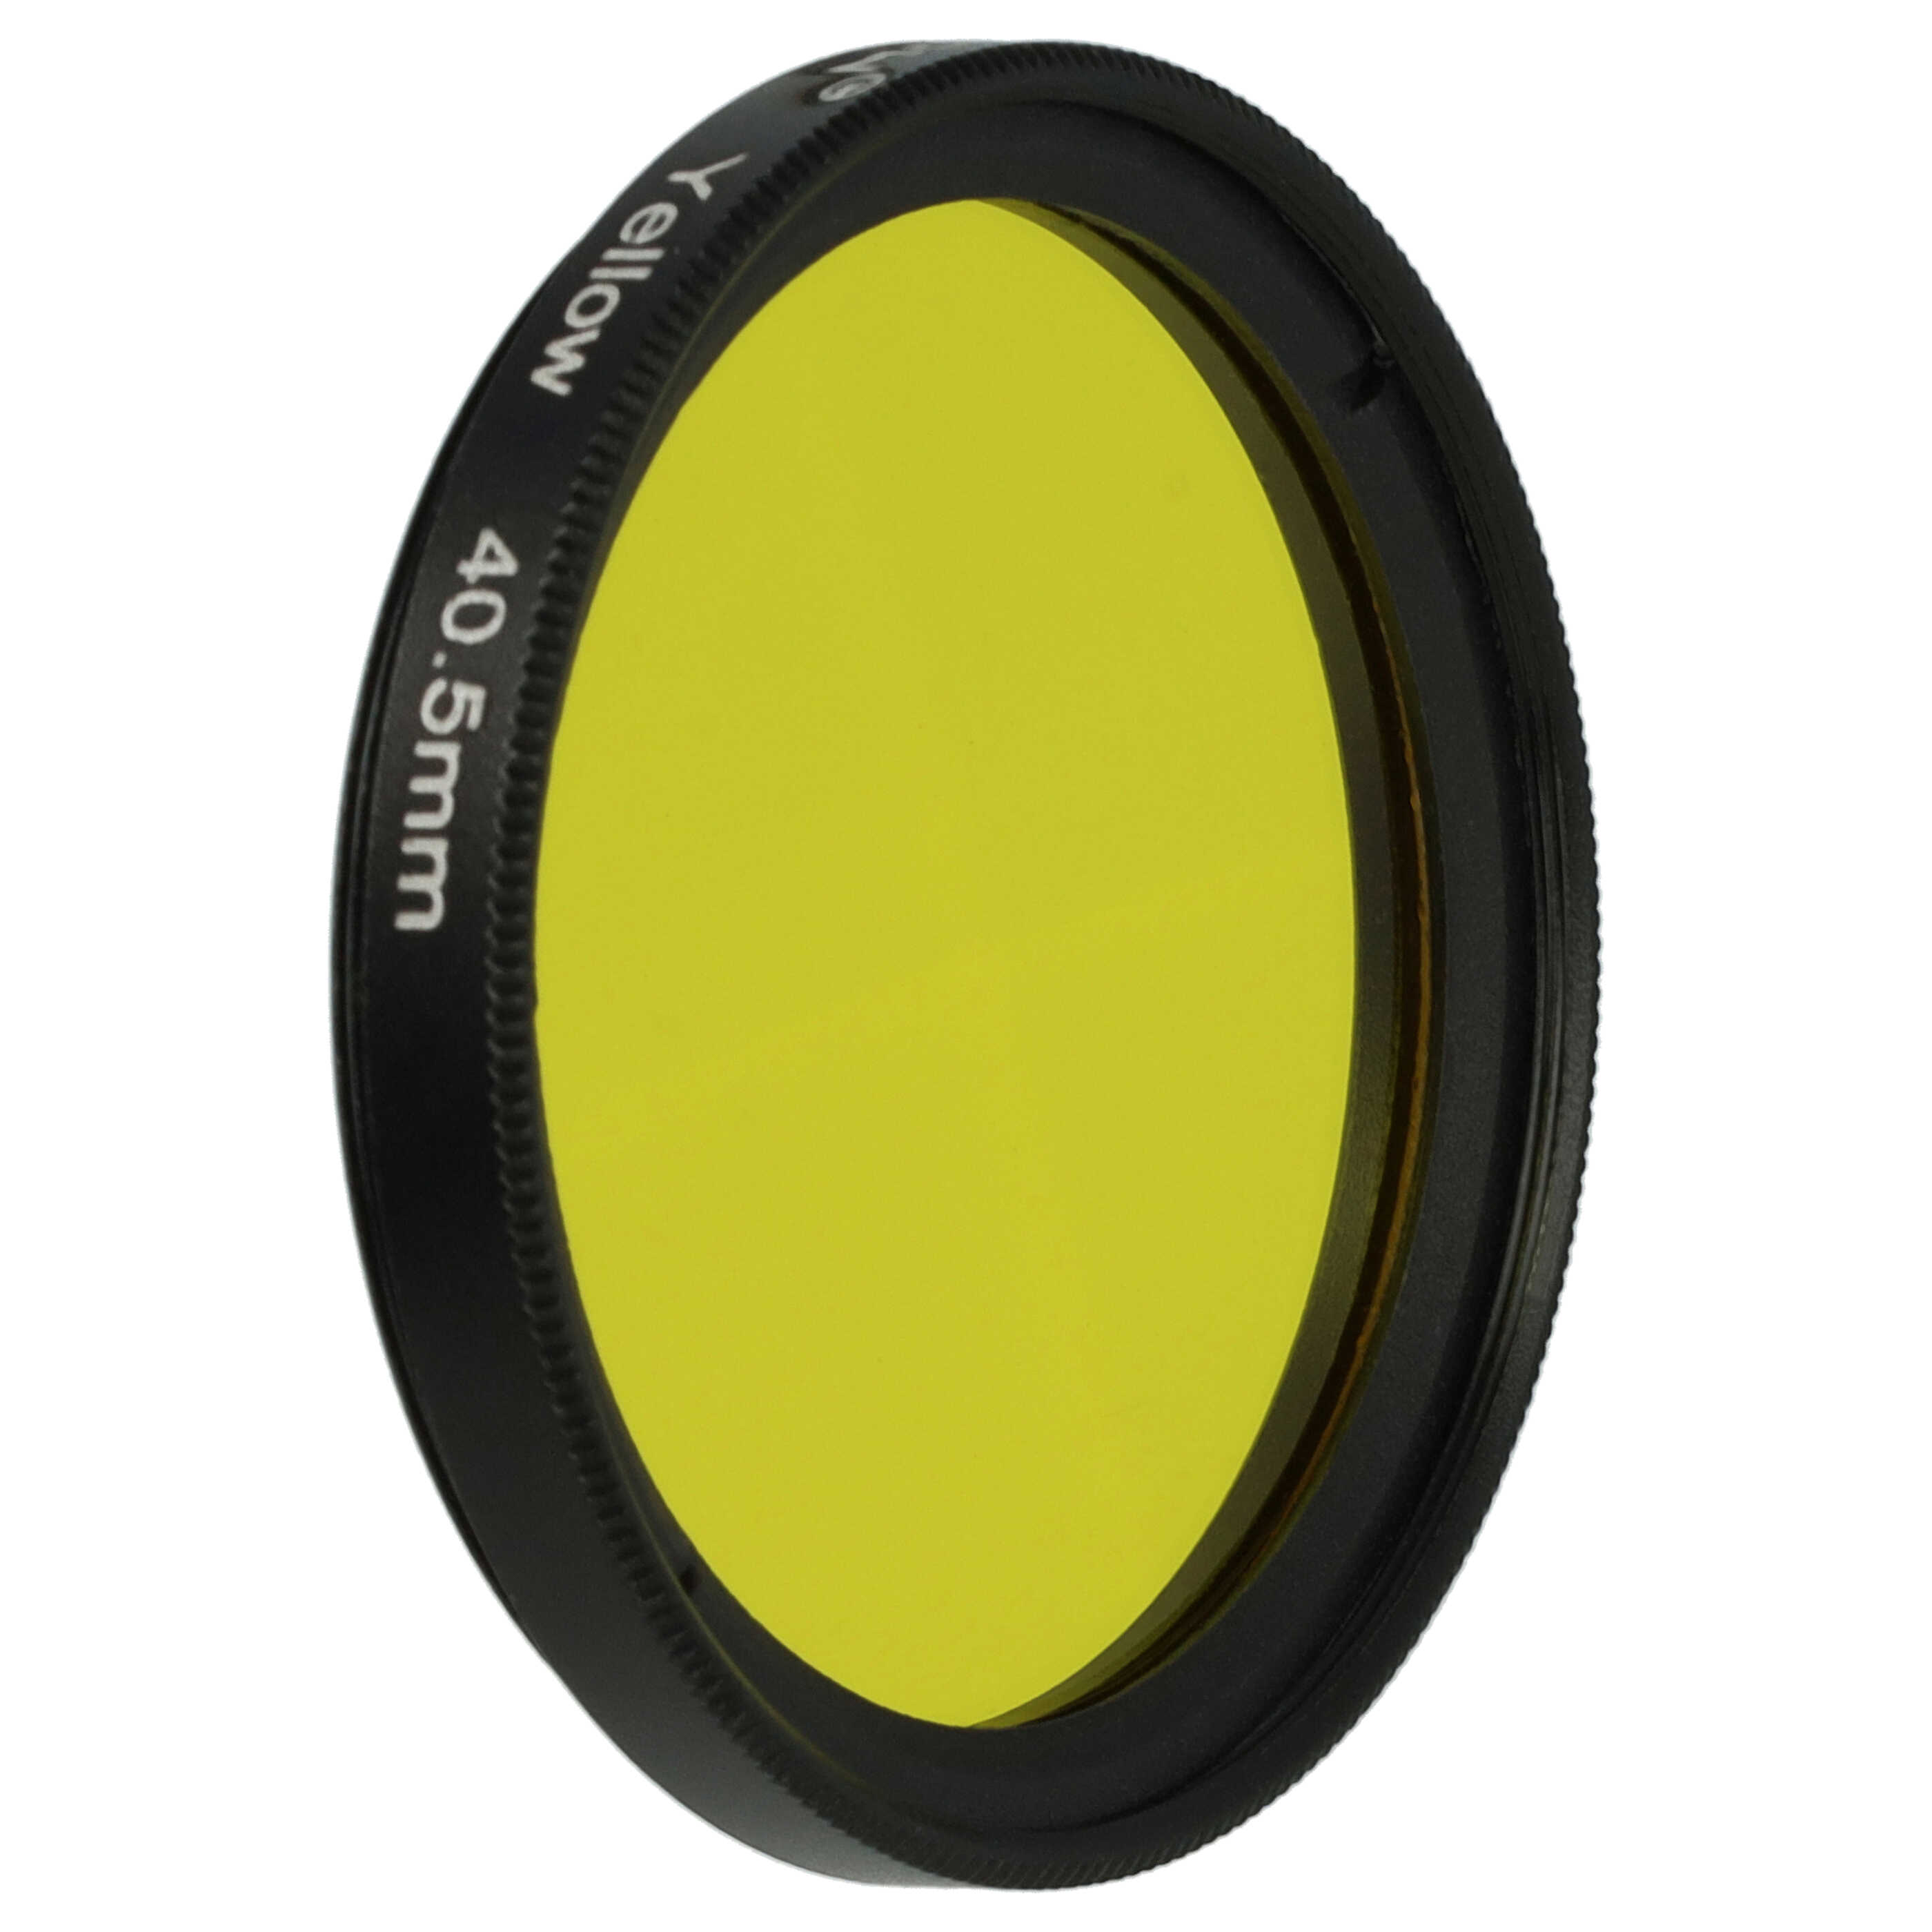 Filtro de color para objetivo de cámara con rosca de filtro de 40,5 mm - Filtro amarillo